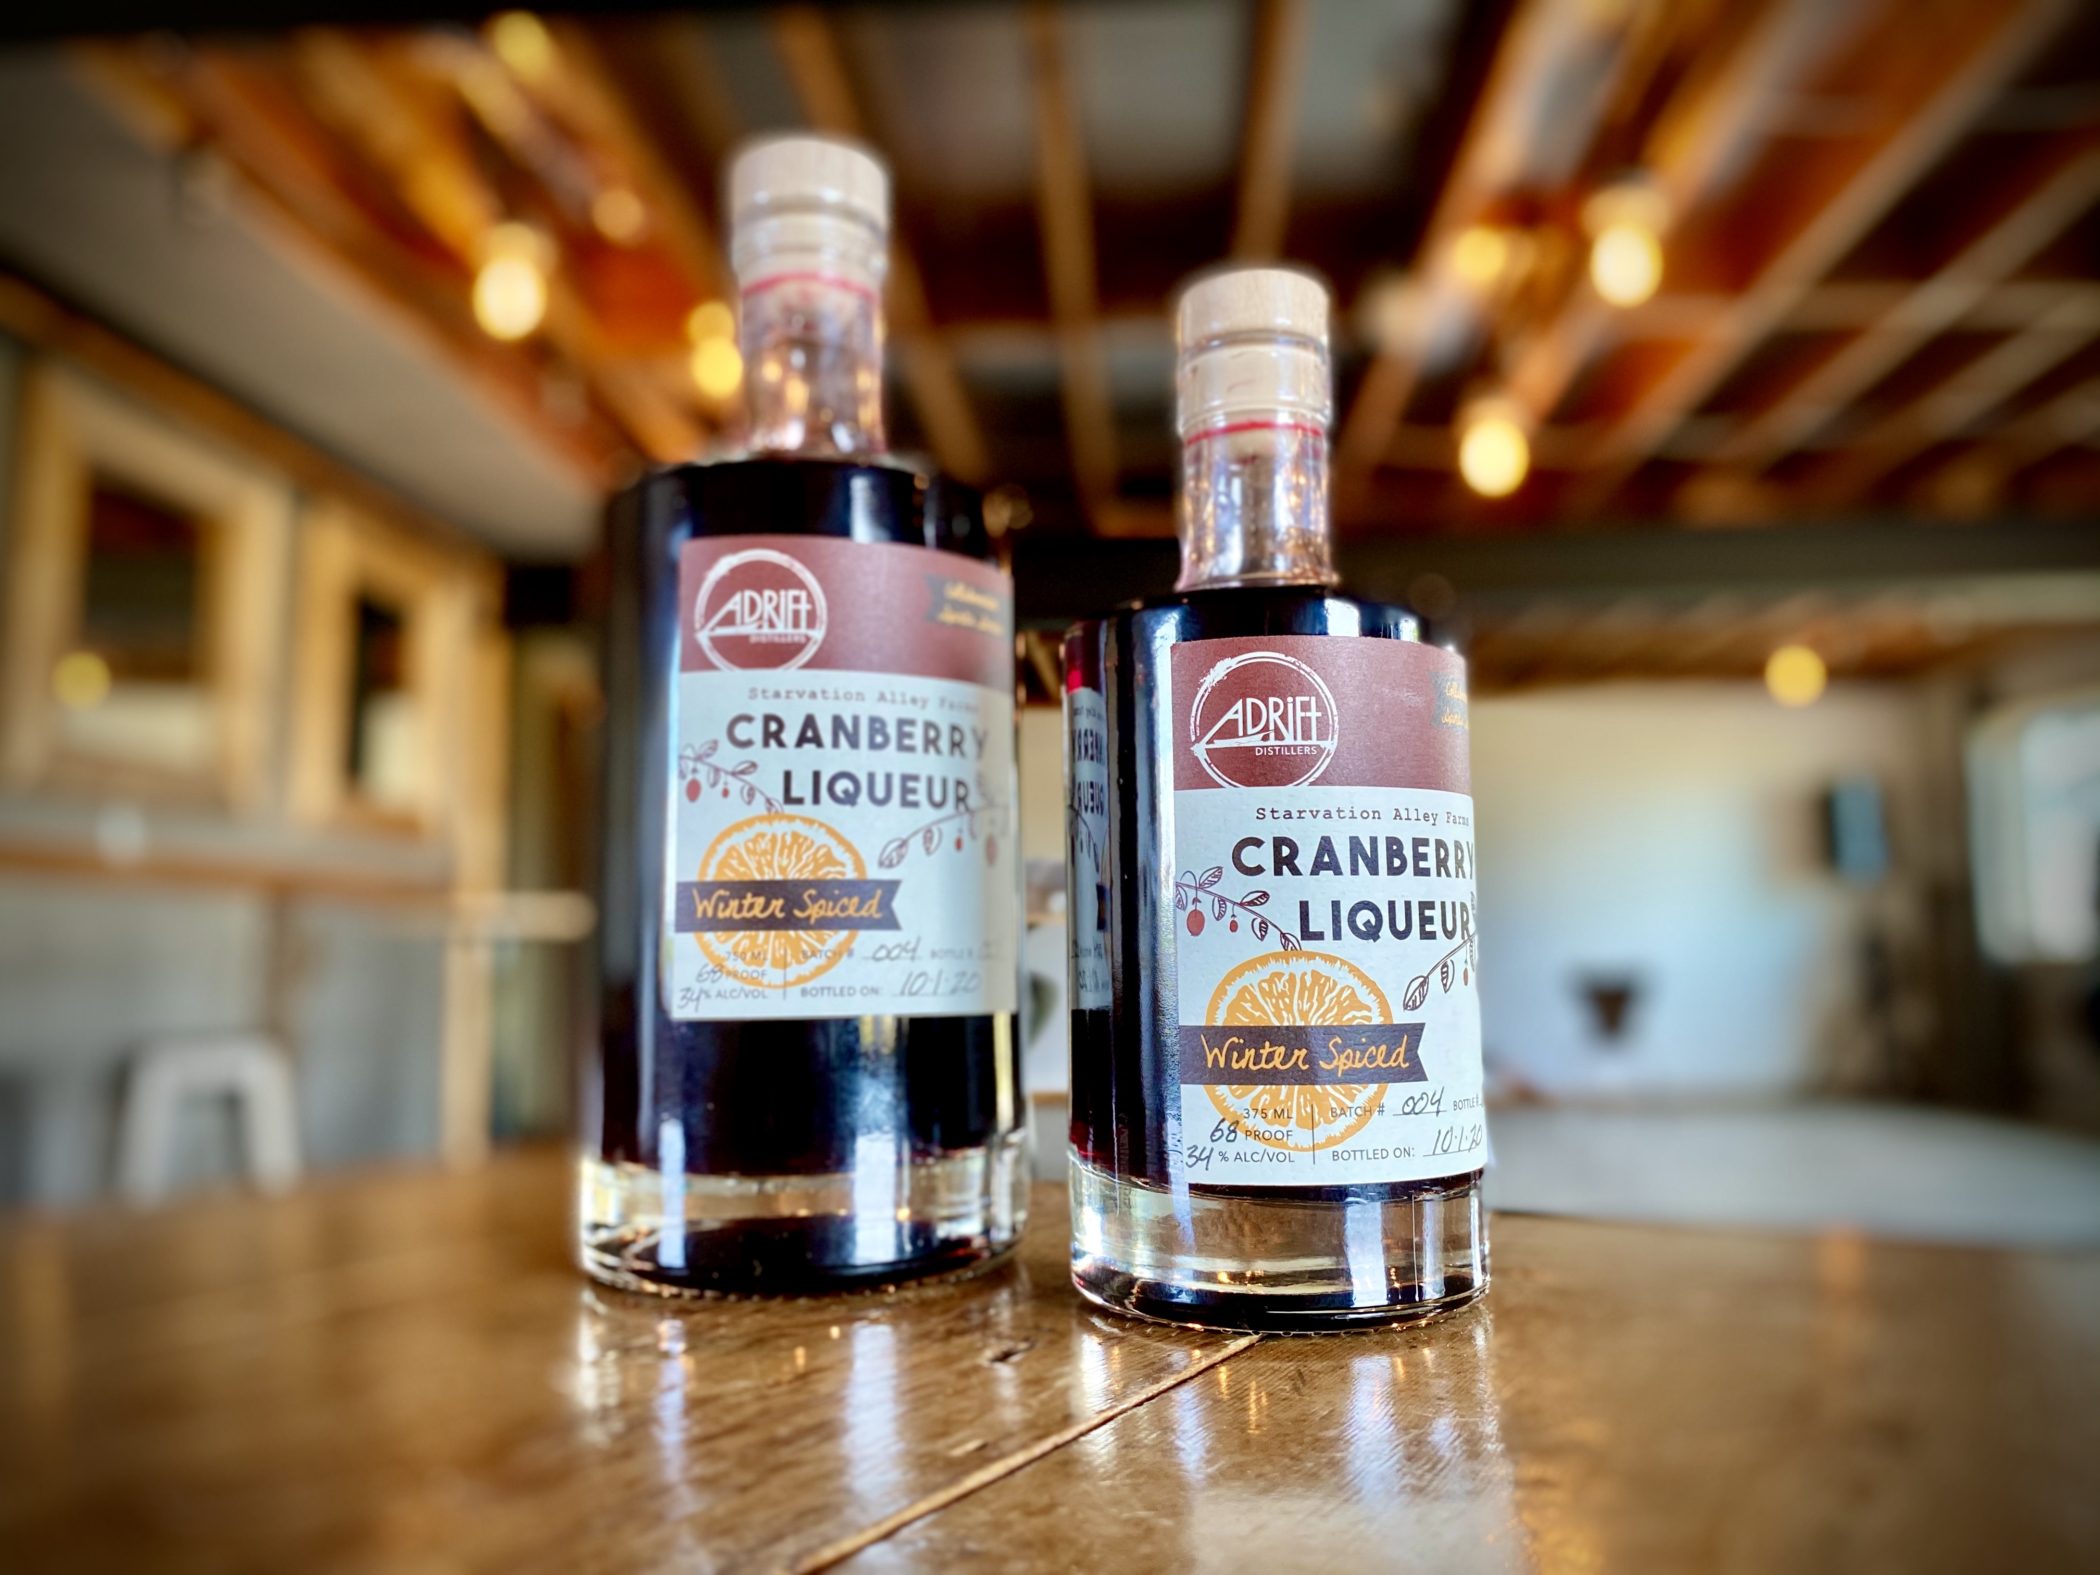 winter spiced cranberry liquor adrift distillers